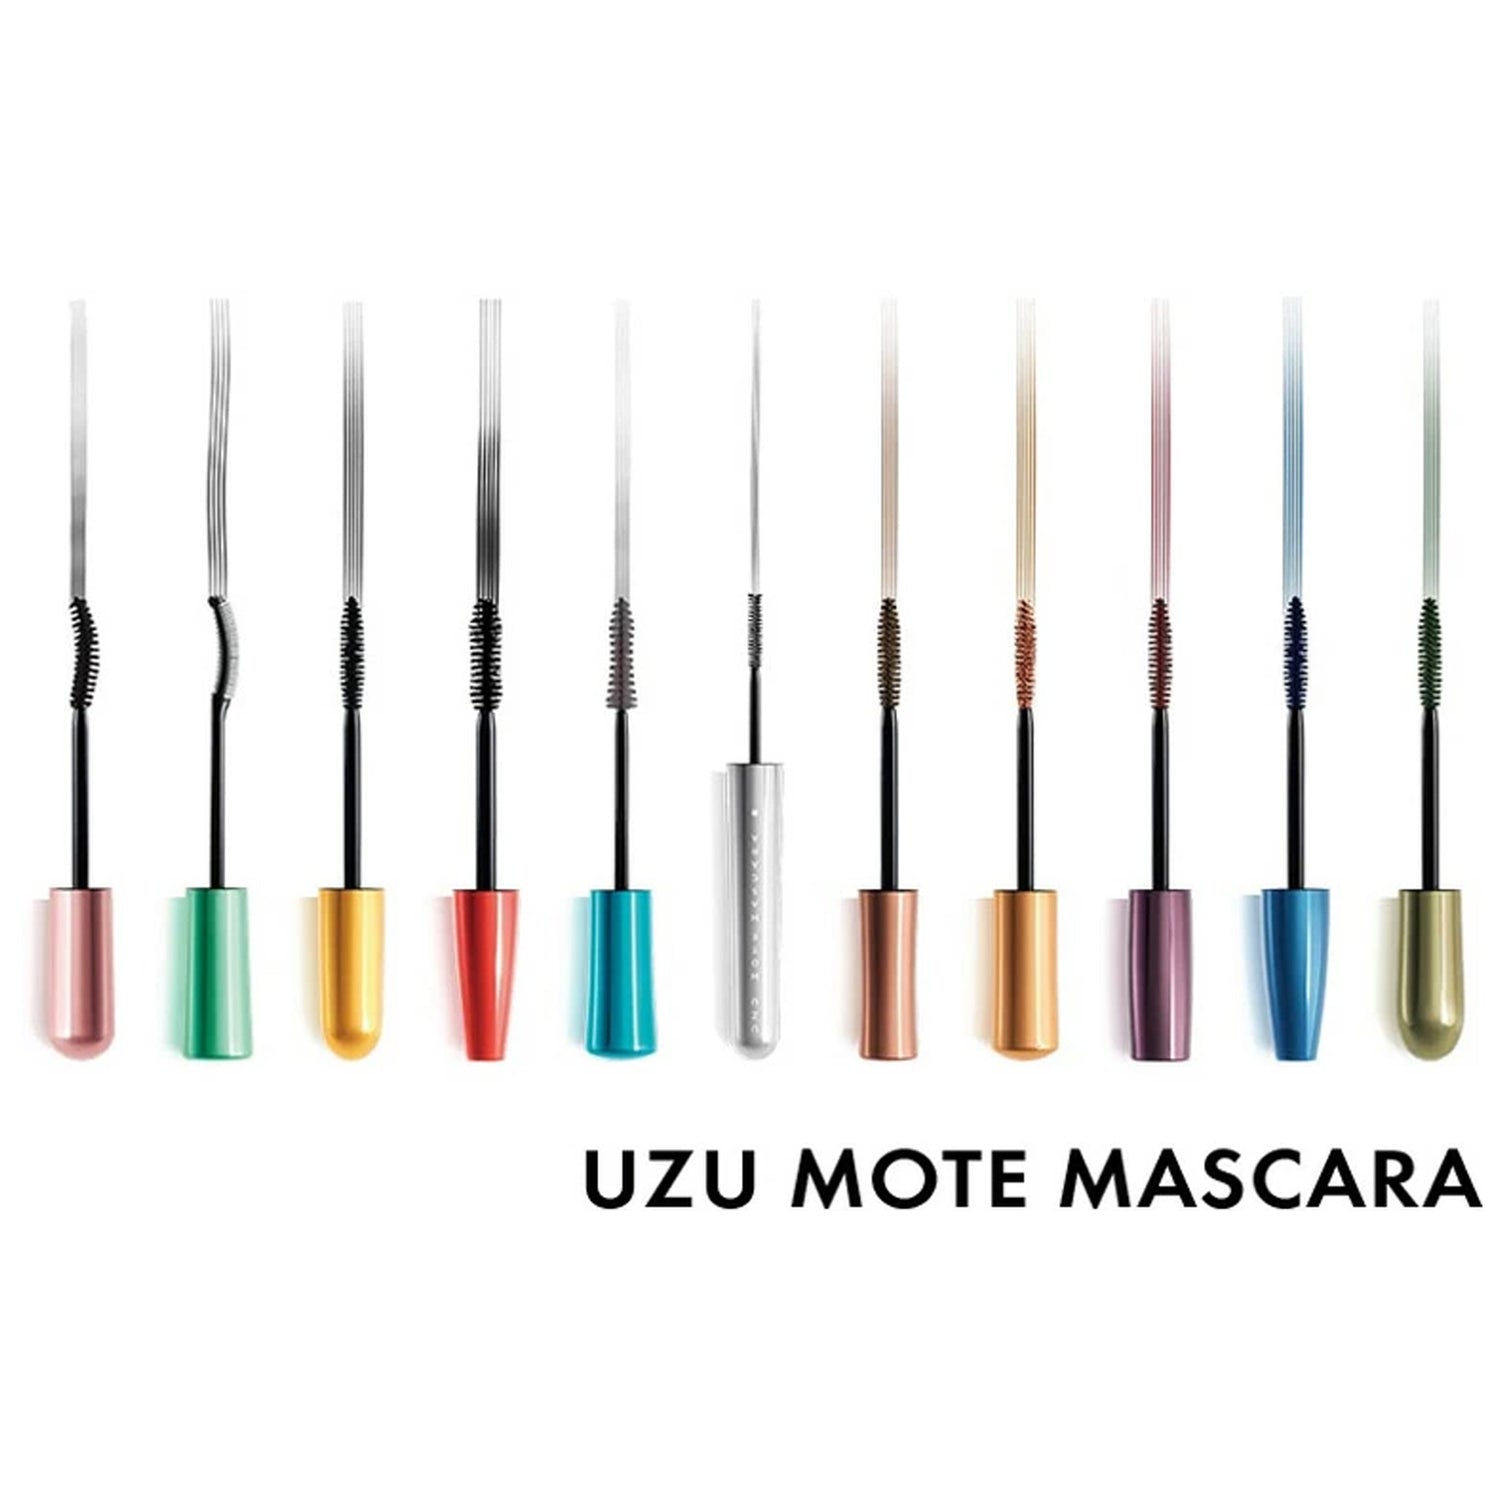 UZU Flowfushi Mote Mascara 5.5g